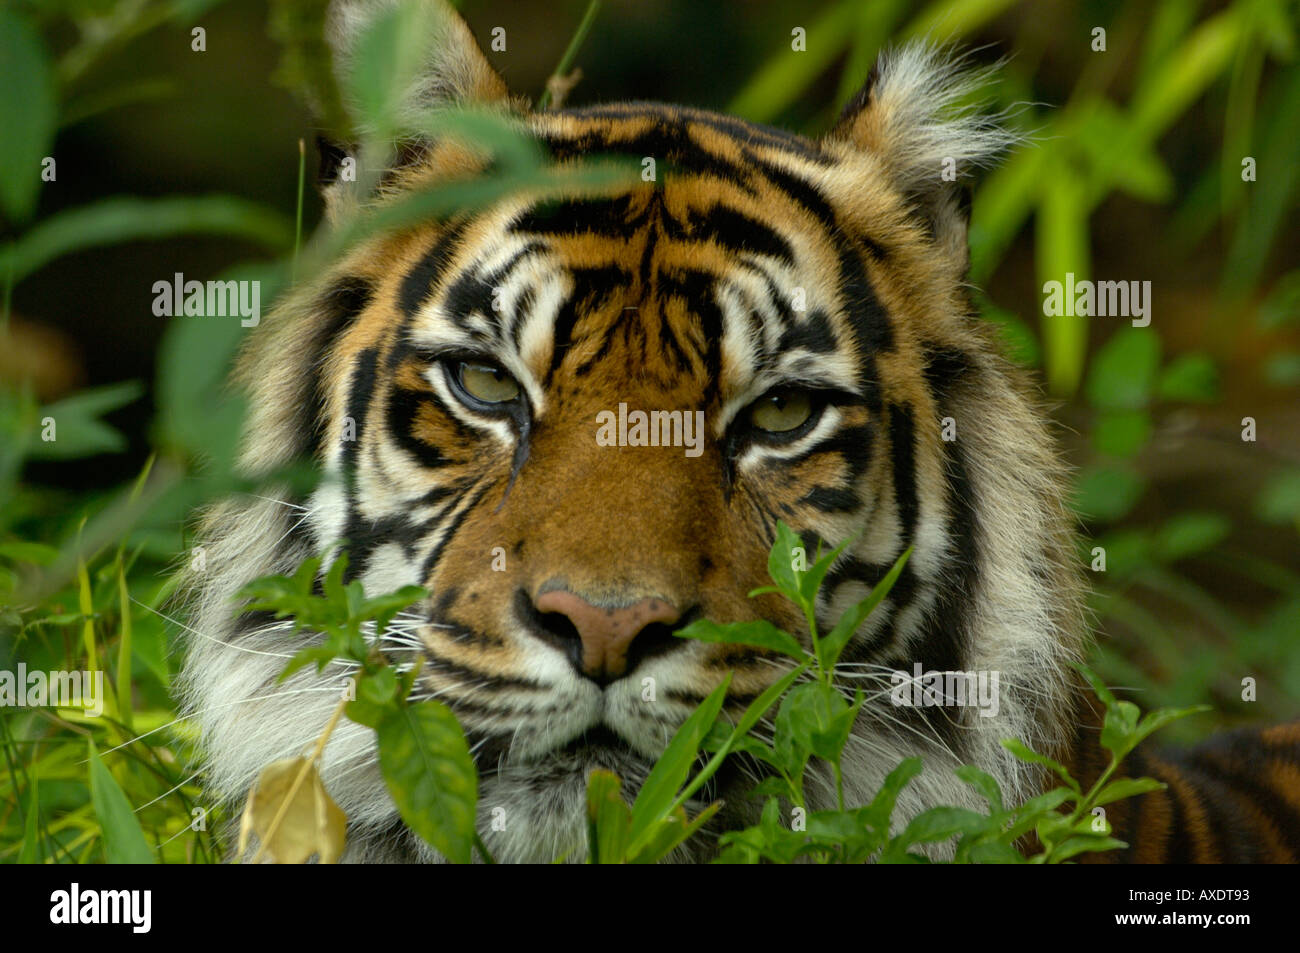 Tigre de Sumatra Panthera tigris Espèces menacées Banque D'Images